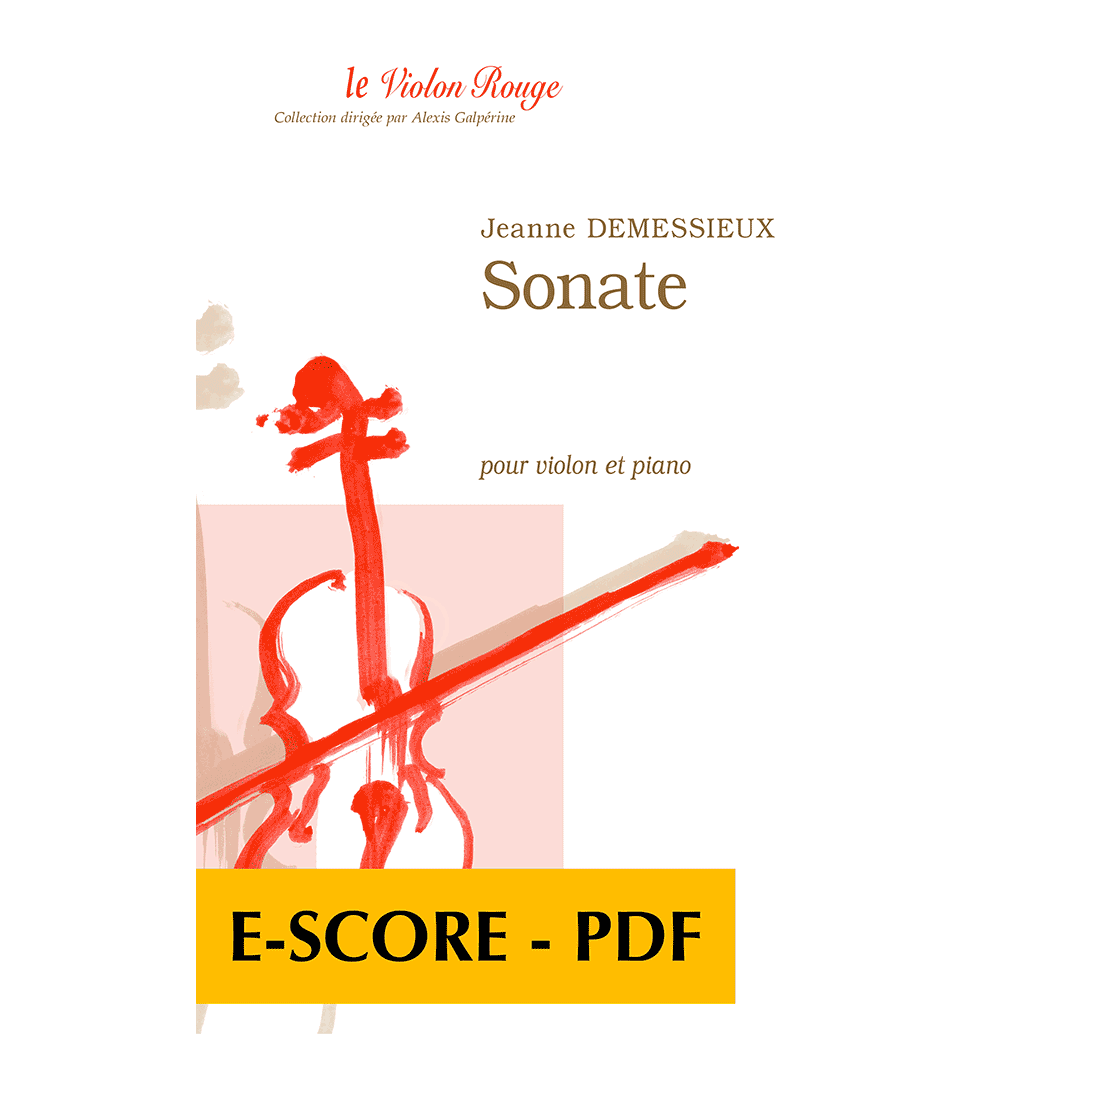 Sonate pour violon et piano - E-score PDF